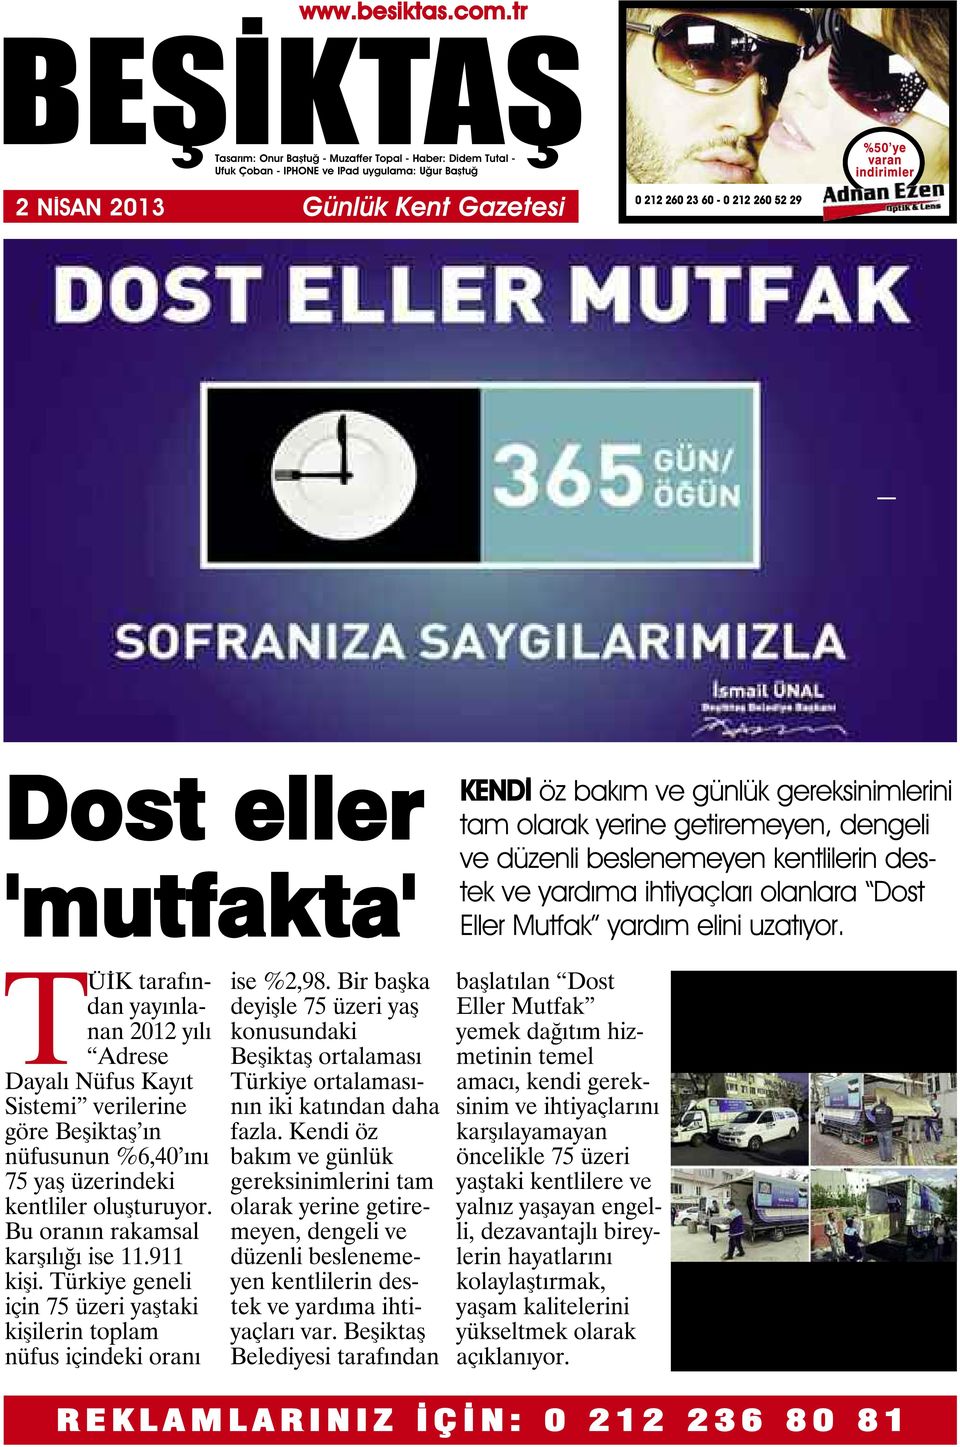 TÜİK tarafından yayınlanan 2012 yılı Adrese Dayalı Nüfus Kayıt Sistemi verilerine göre Beşiktaş ın nüfusunun %6,40 ını 75 yaş üzerindeki kentliler oluşturuyor. Bu oranın rakamsal karşılığı ise 11.